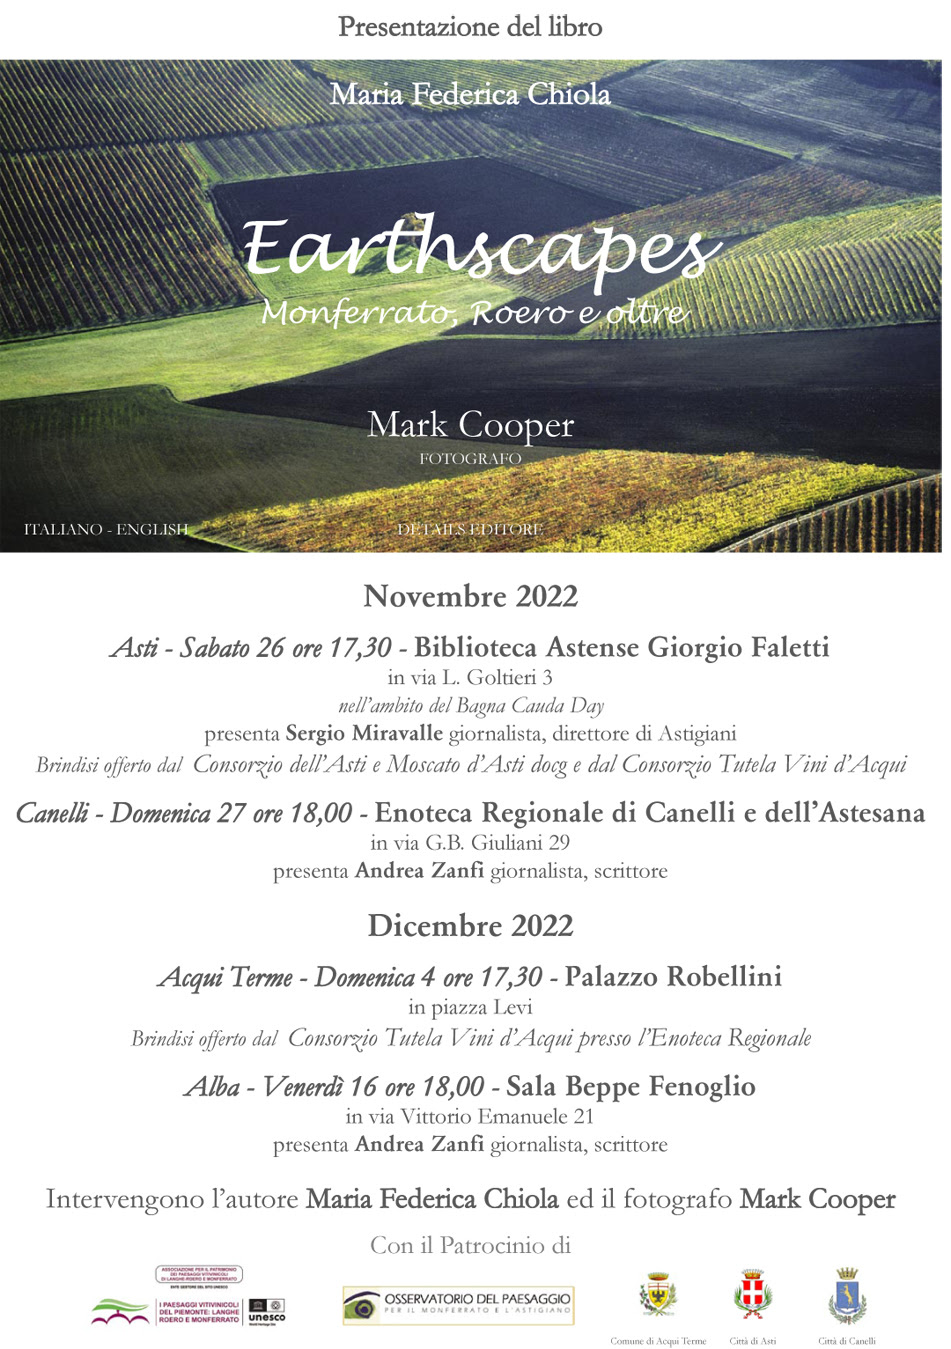 Date di presentazione del Libro di Marcica Chiola e Mark Cooper �Earthscapes Monferrato, Roero e oltre�